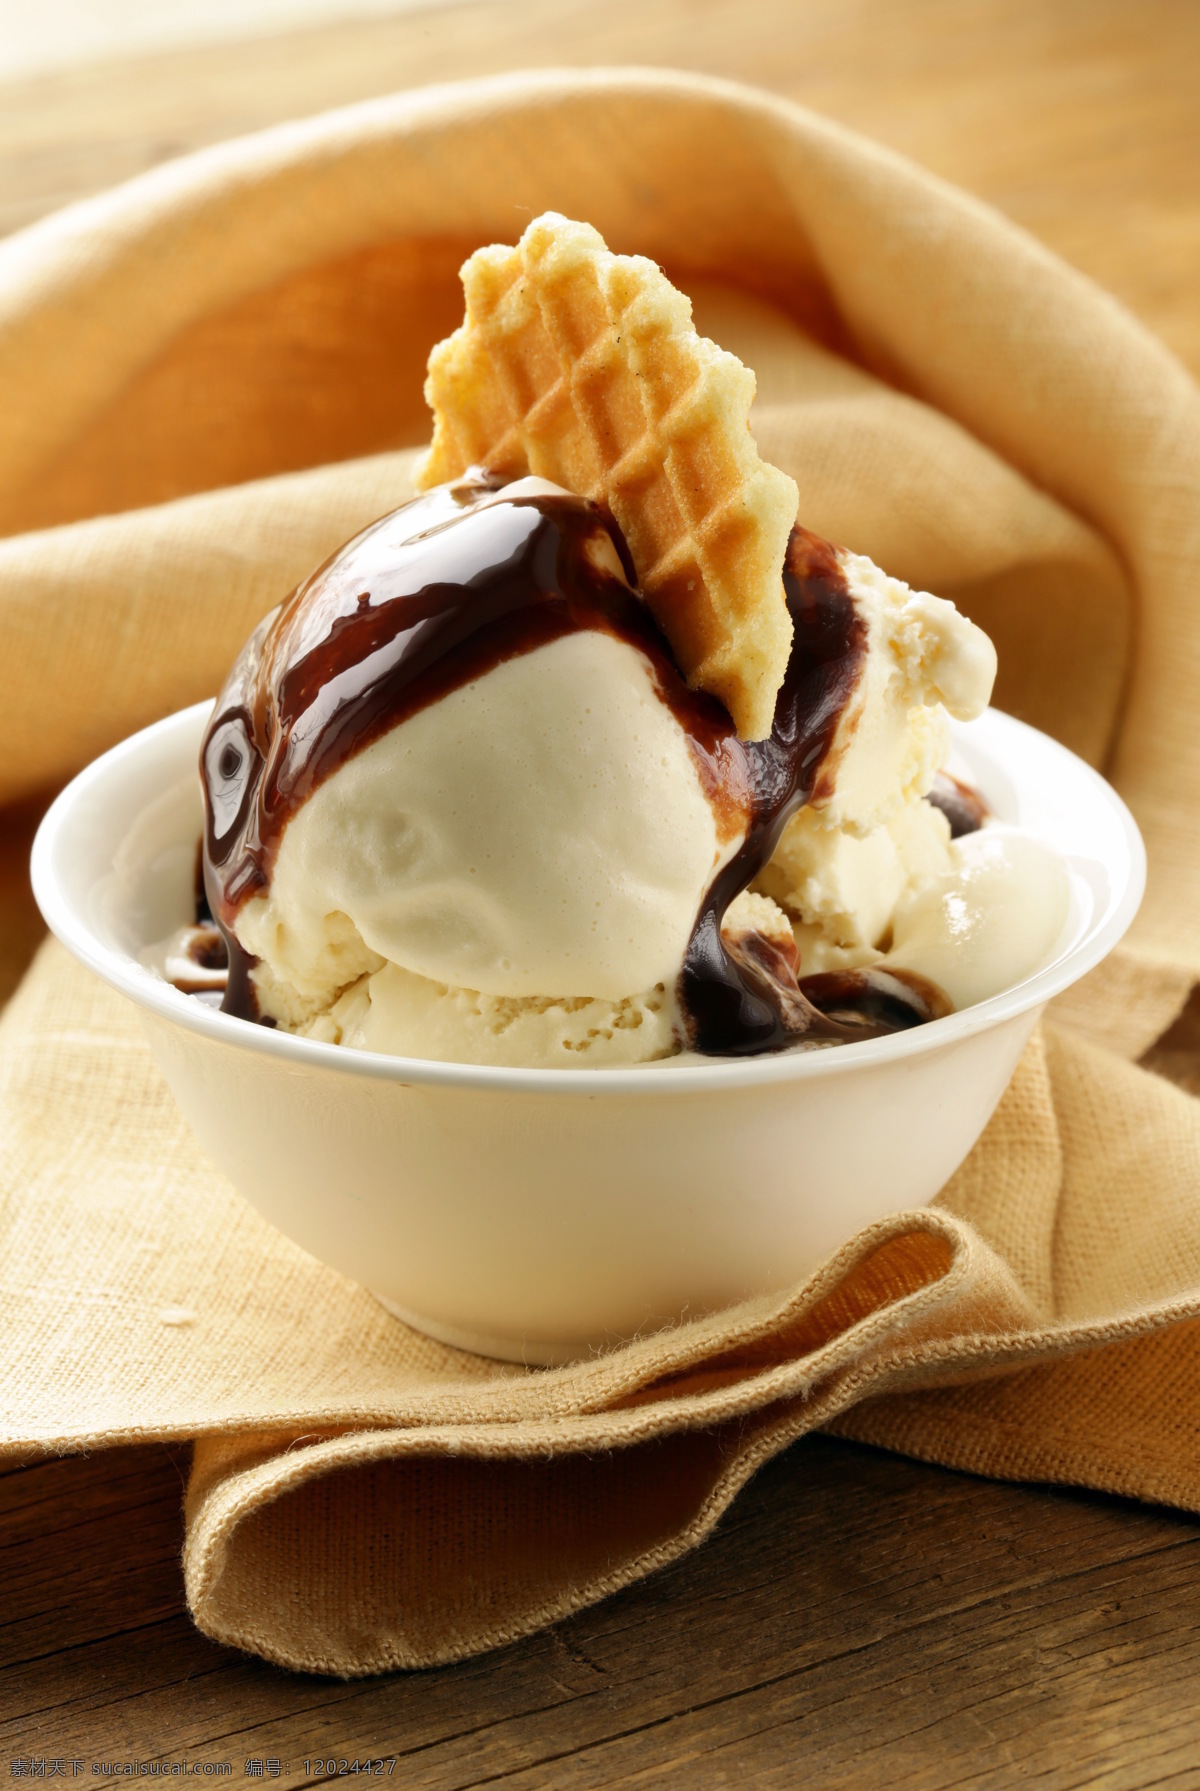 夏季 美味 巧克力 七彩冰淇淋 美味冰淇淋 冰激淋 美味美食 夏季凉品 美食插图 其他类别 餐饮美食 黑色